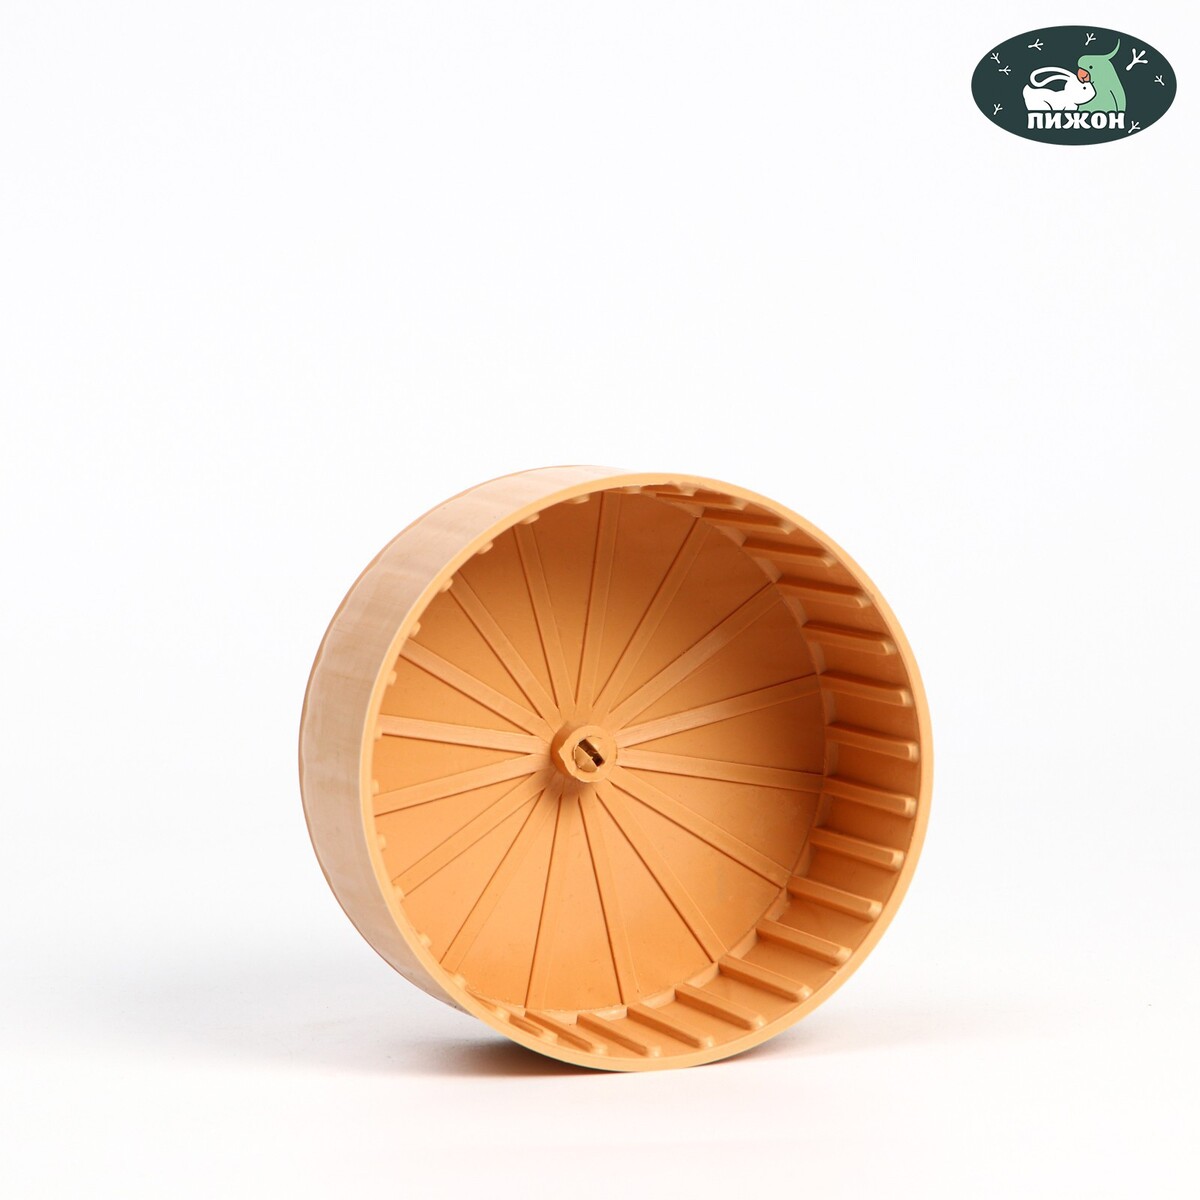 Колесо для грызунов полузакрытое пластиковое, без подставки, 14 см, бежевое колесо для грызунов тихое 14 см зеленое